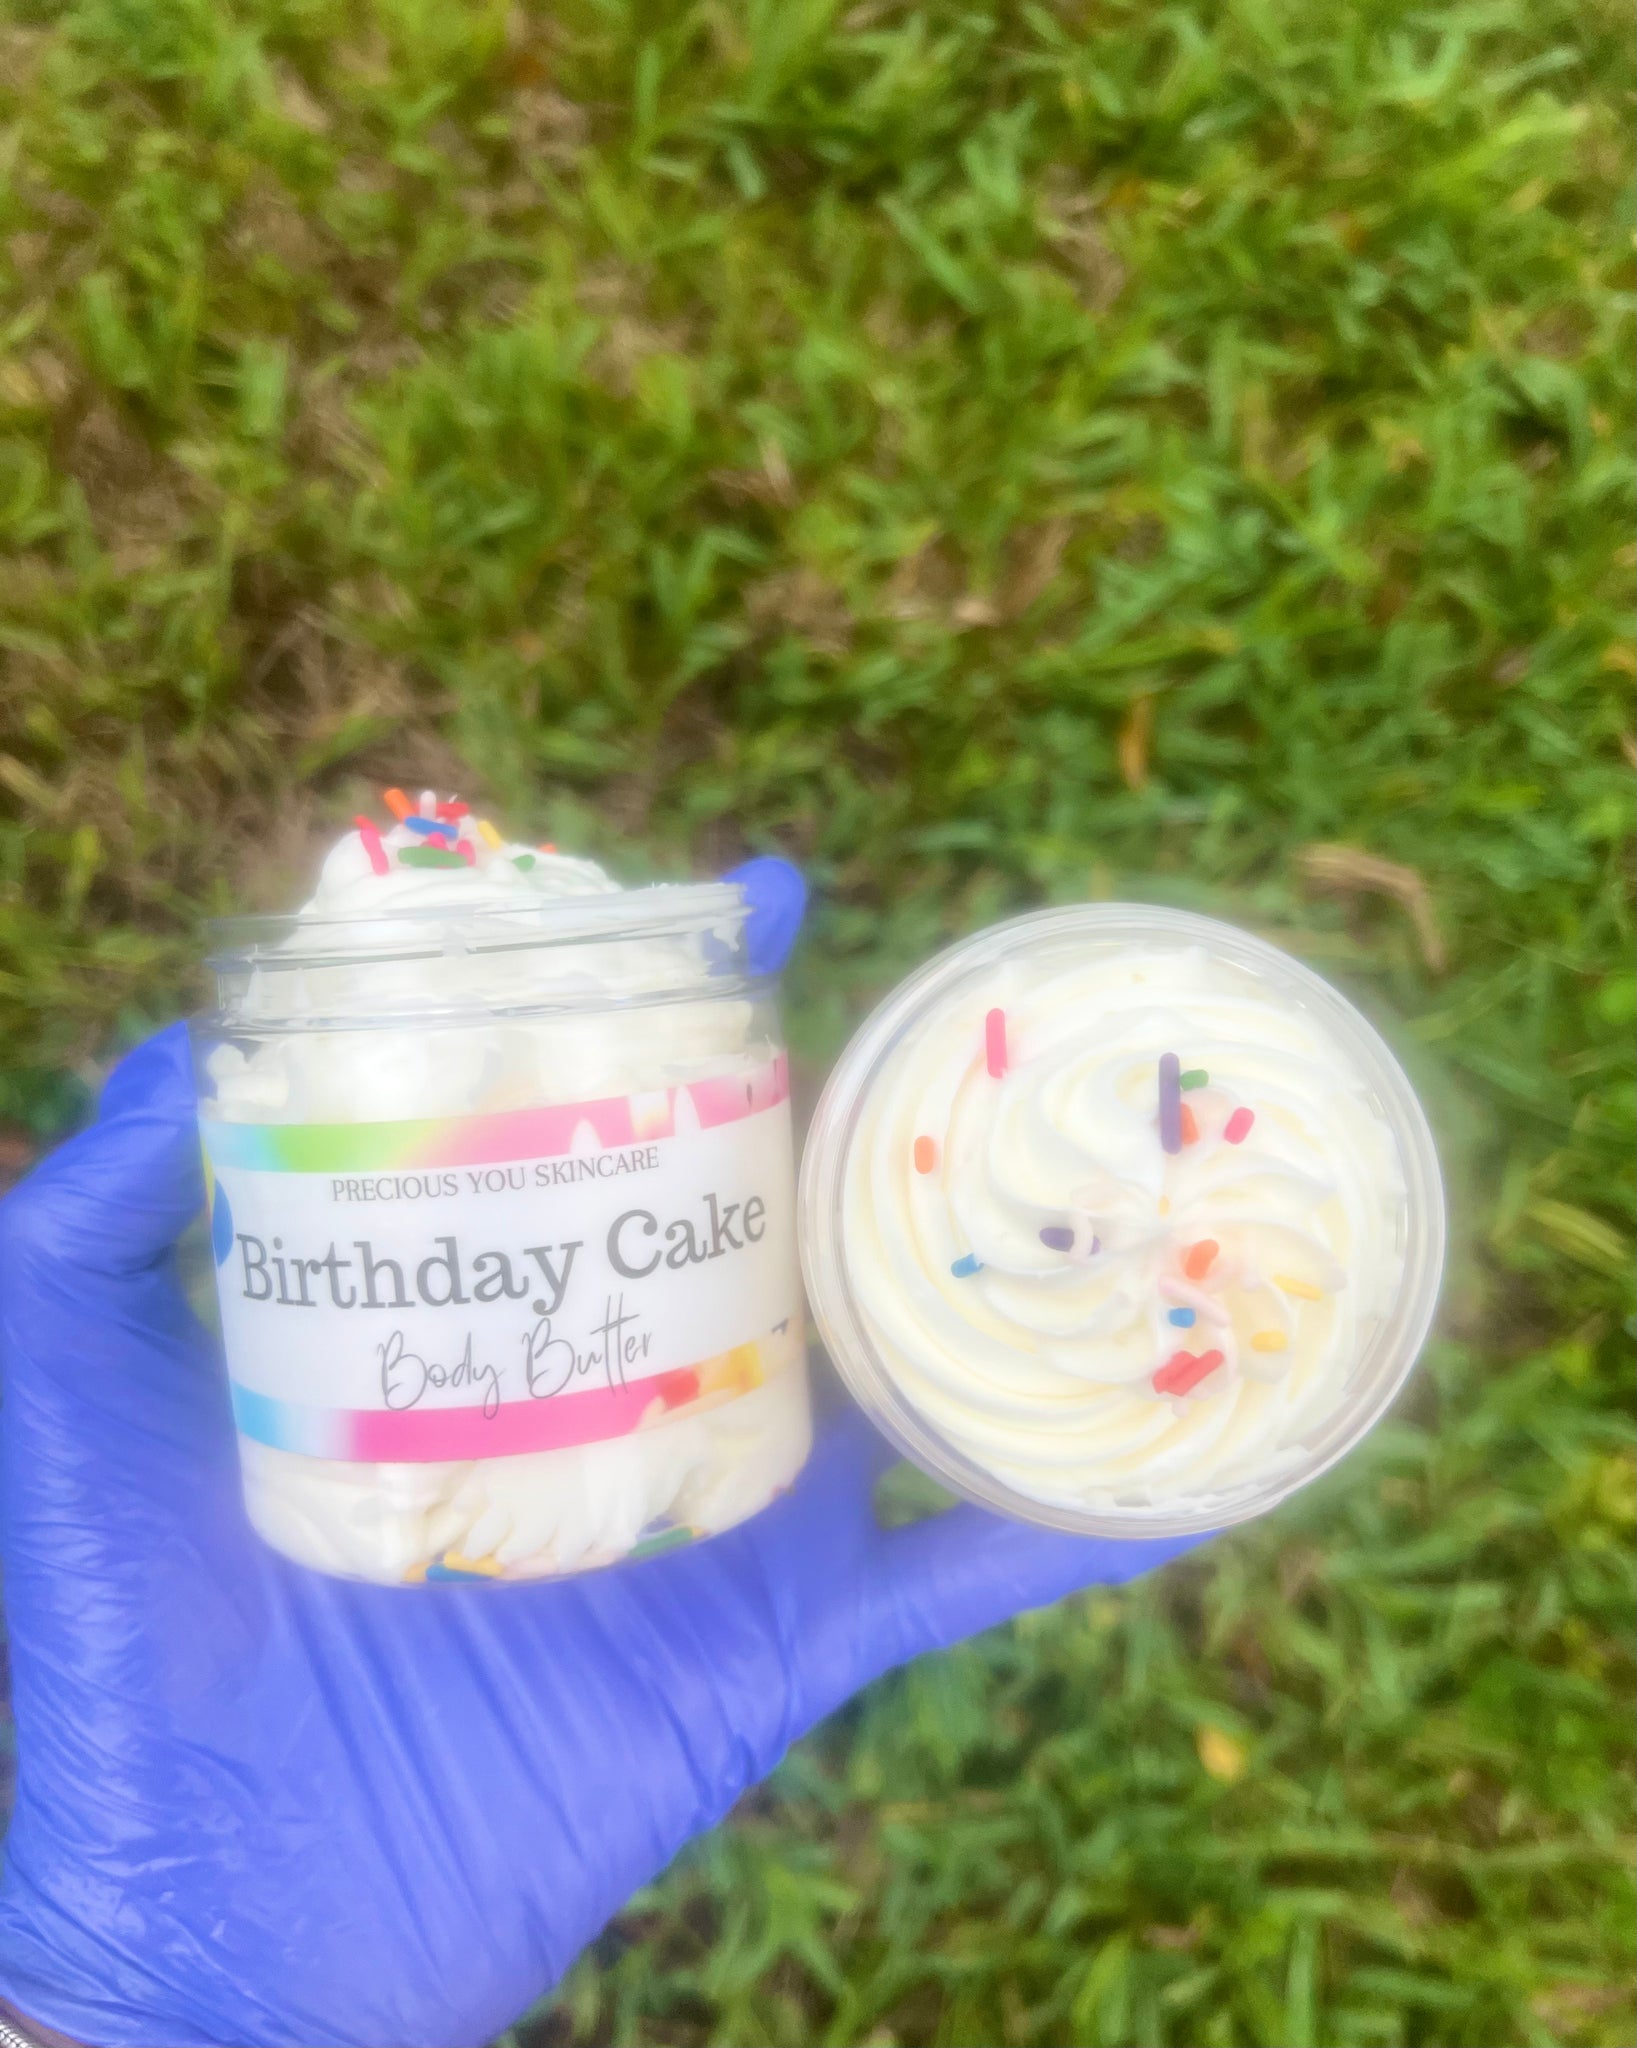 Birthday cake body butter